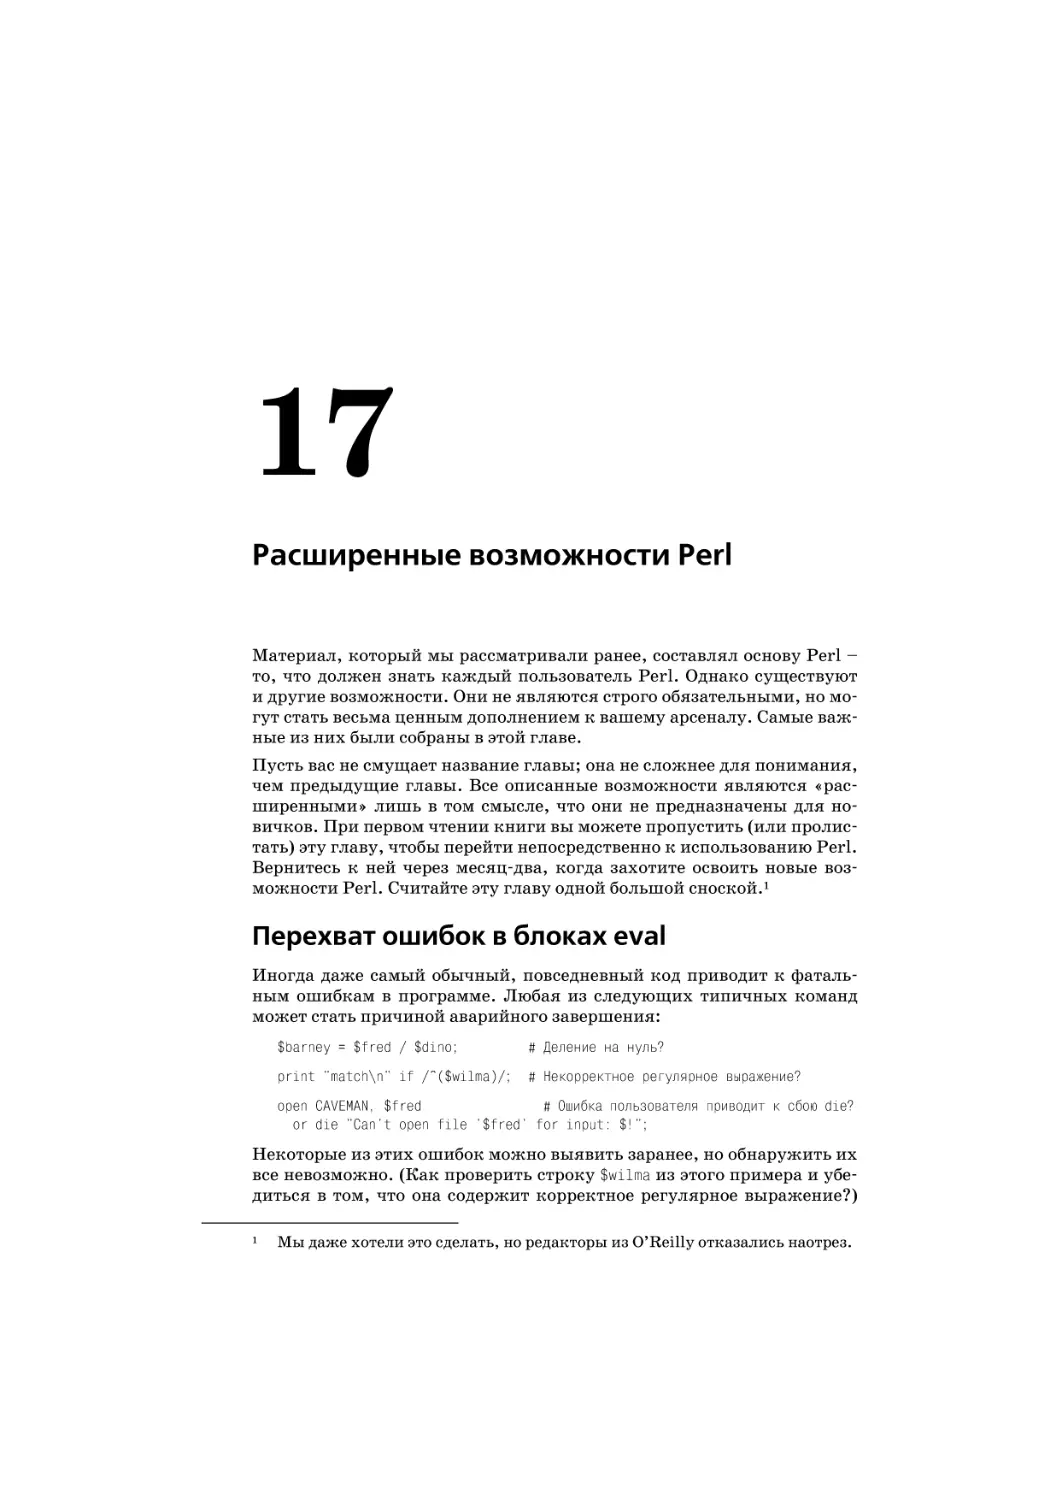 Глава 17. Расширенные возможности Perl
Перехват ошибок в блоках eval